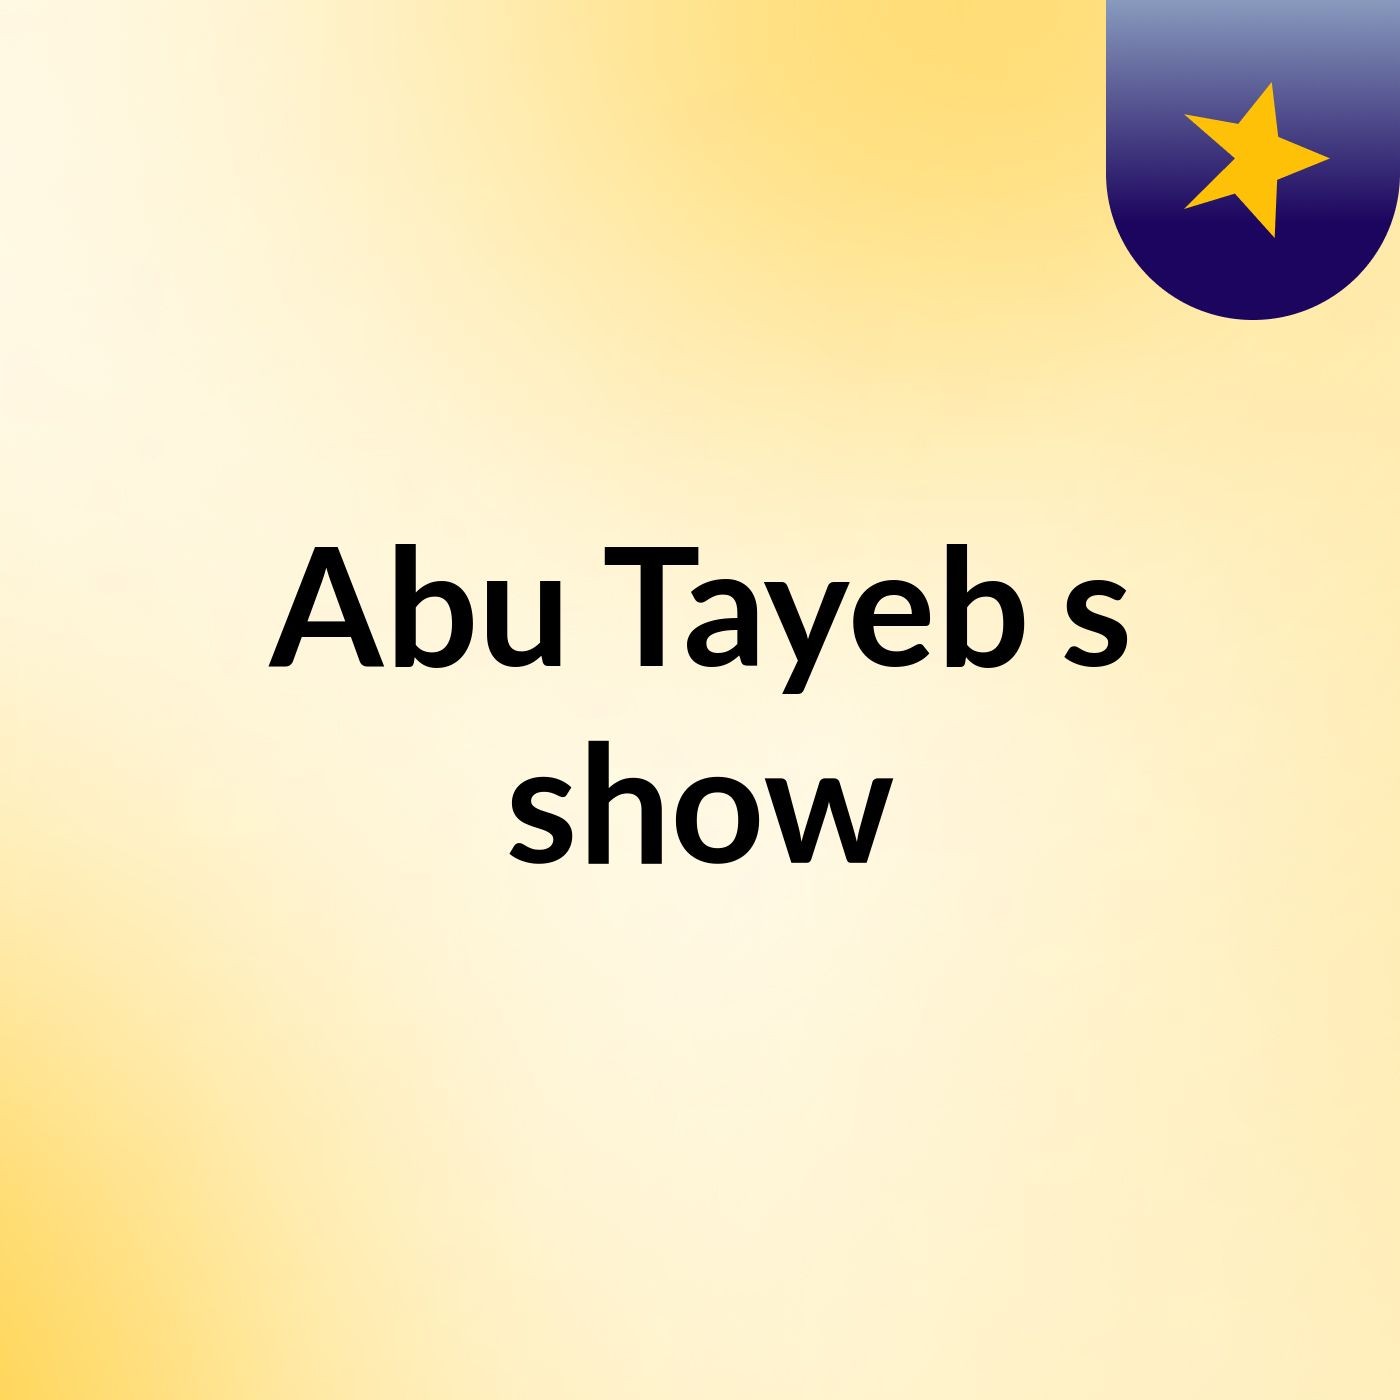 Abu Tayeb's show